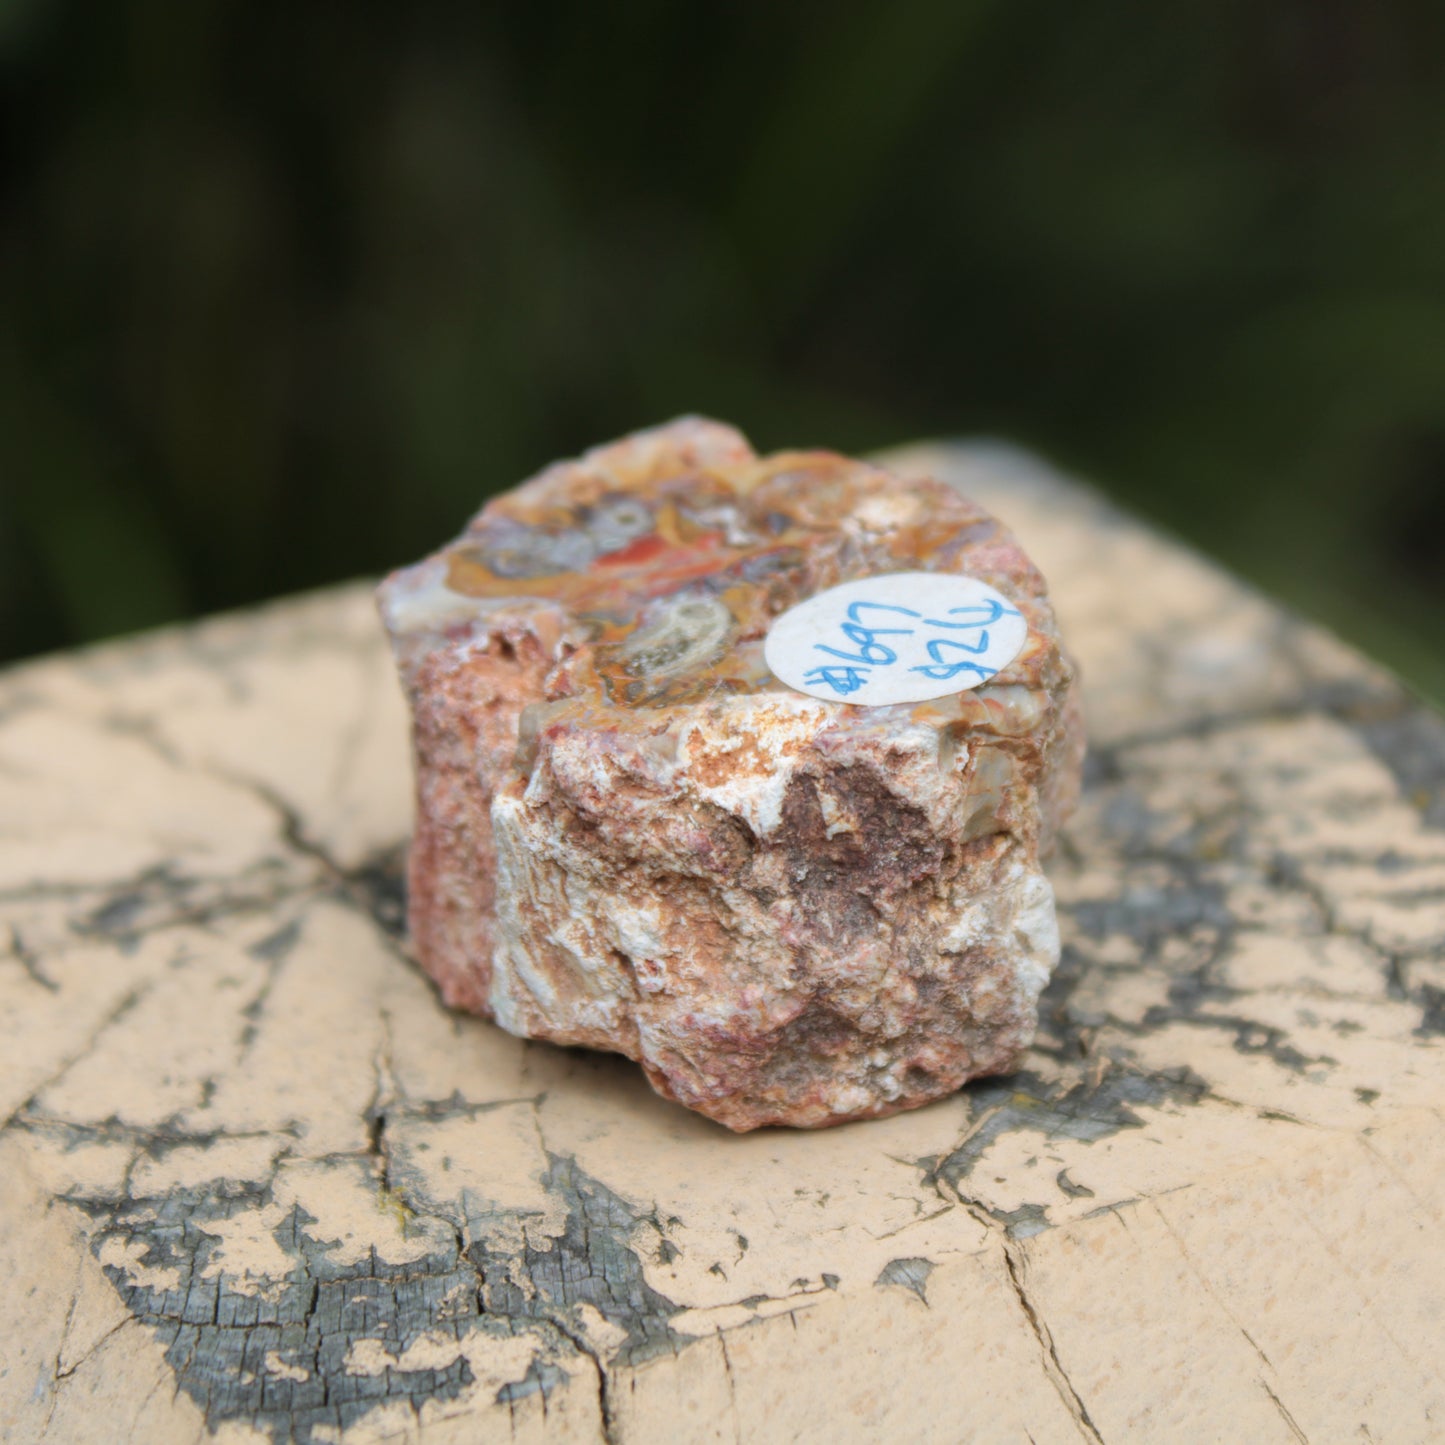 Petrified Wood polished slice from Madagascar 54-58g